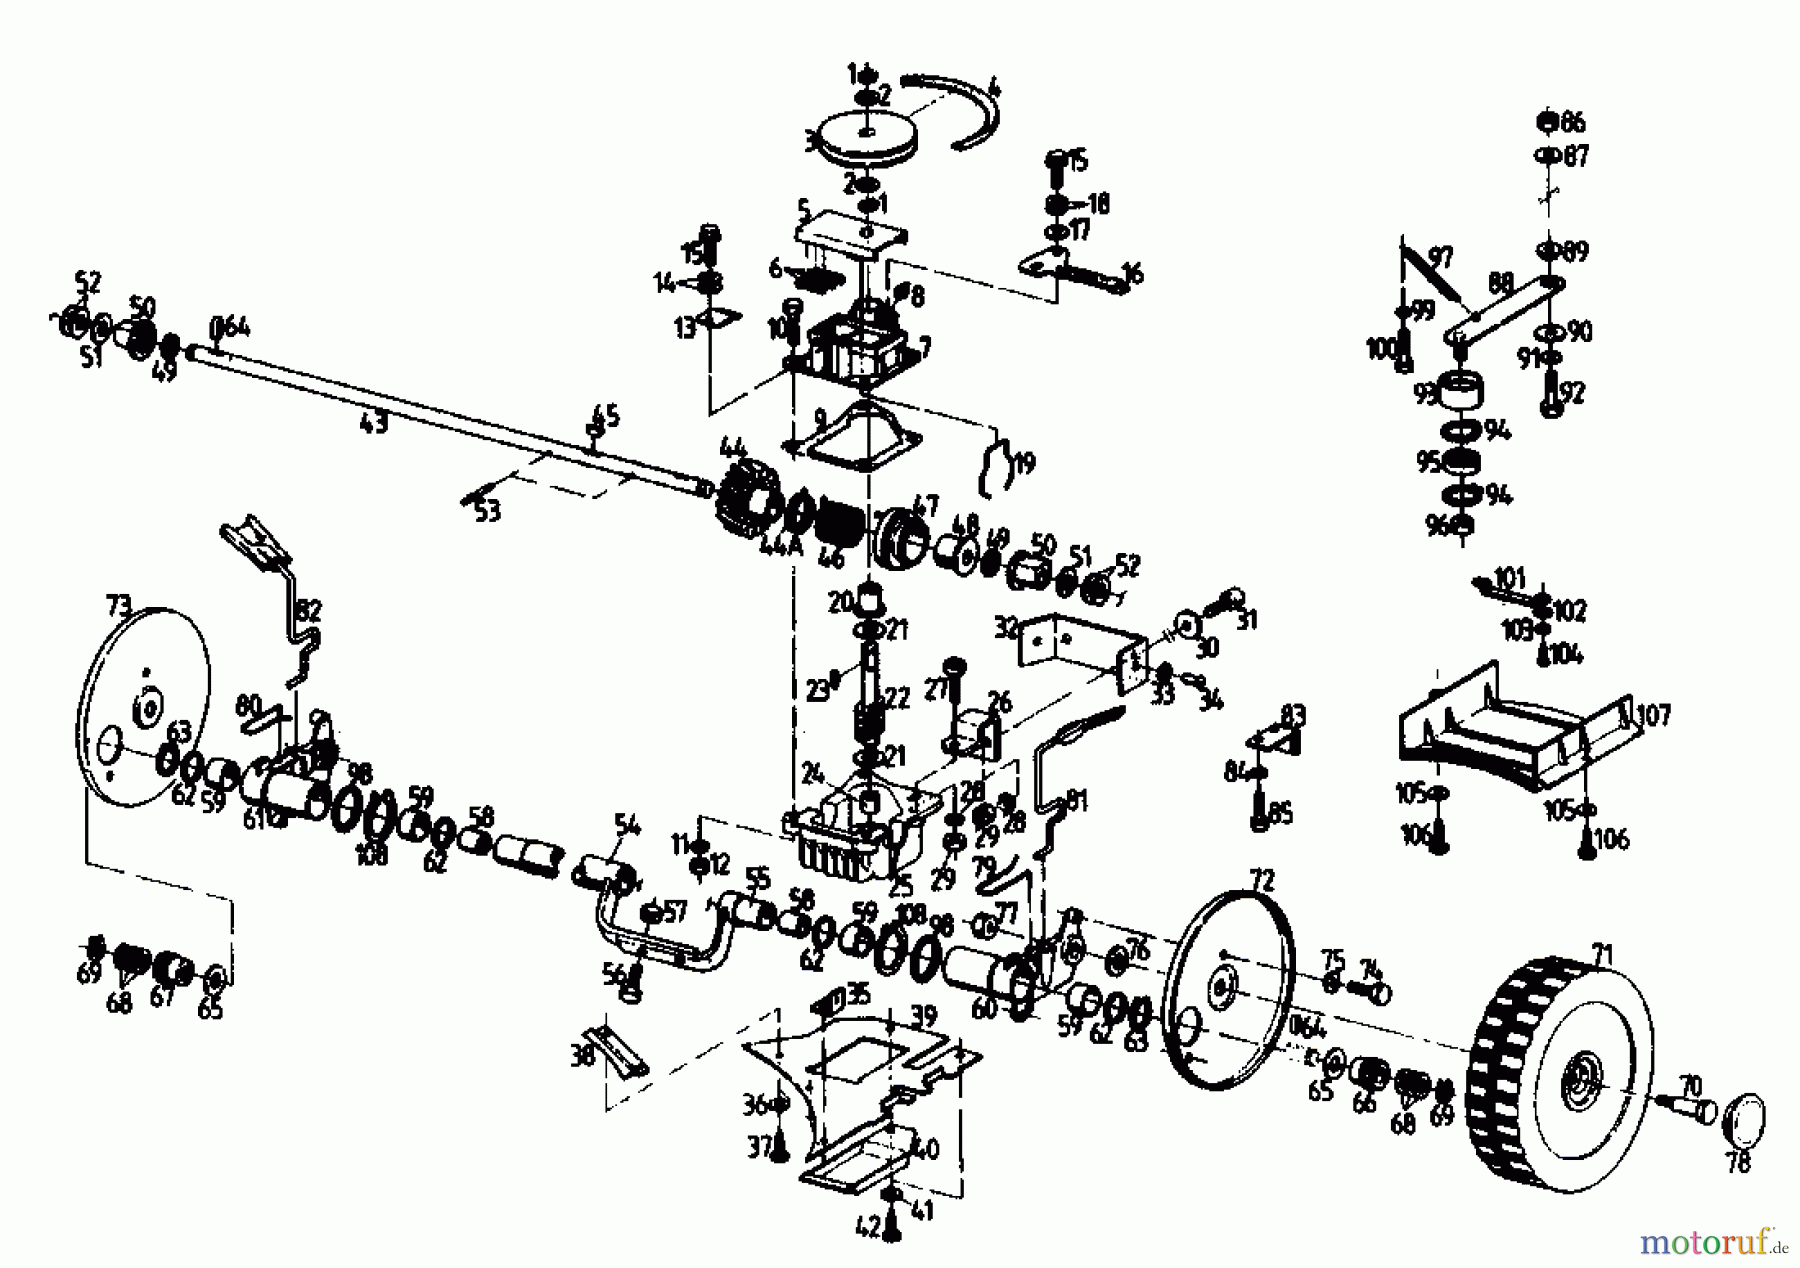  Gutbrod Petrol mower self propelled HB 47 R 02847.01  (1989) Gearbox